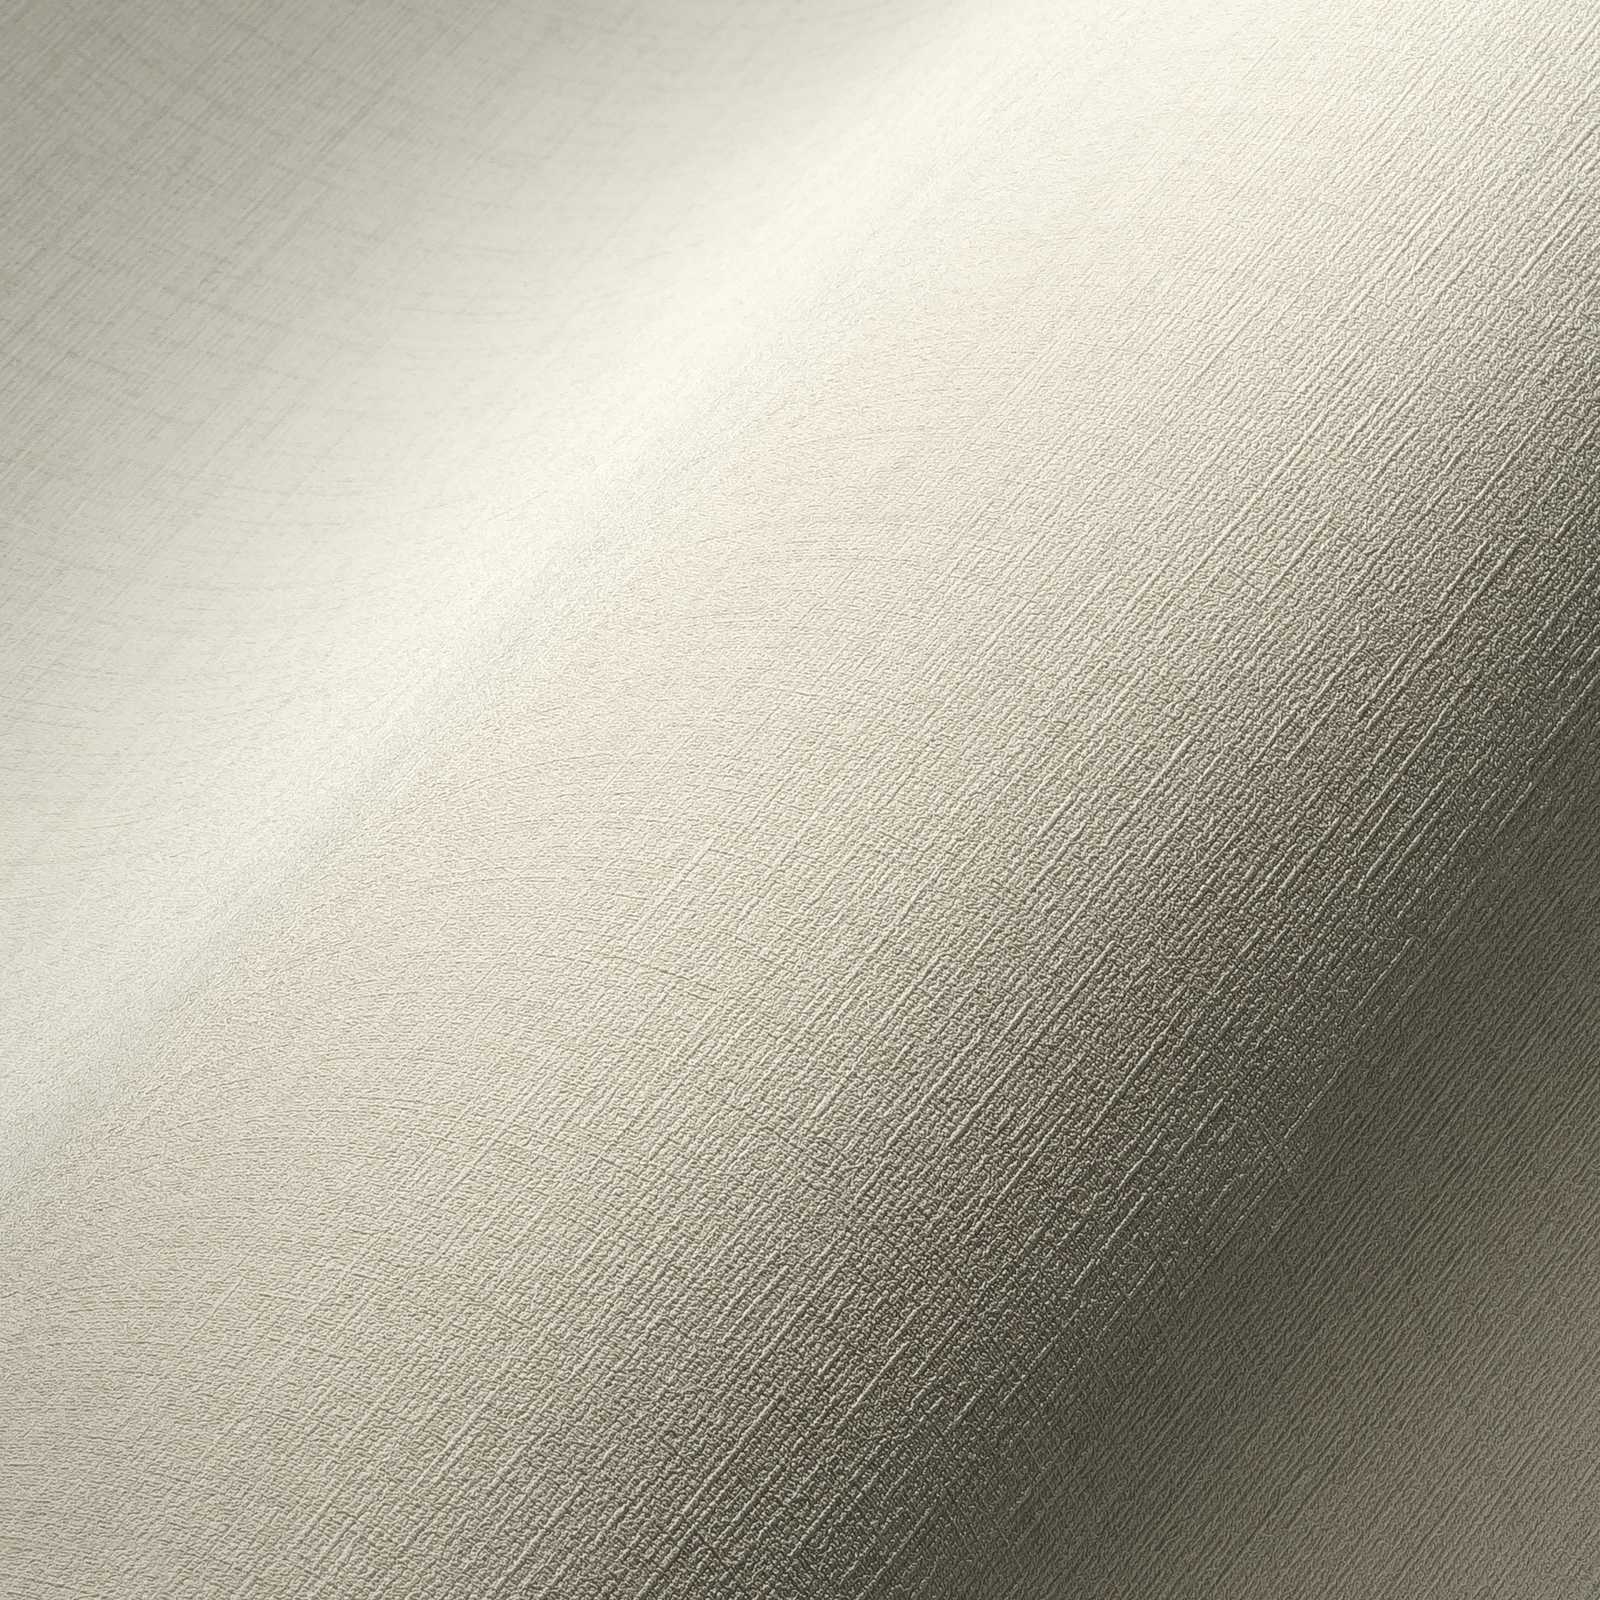             Papel pintado blanco crema con aspecto textil y efecto de textura
        